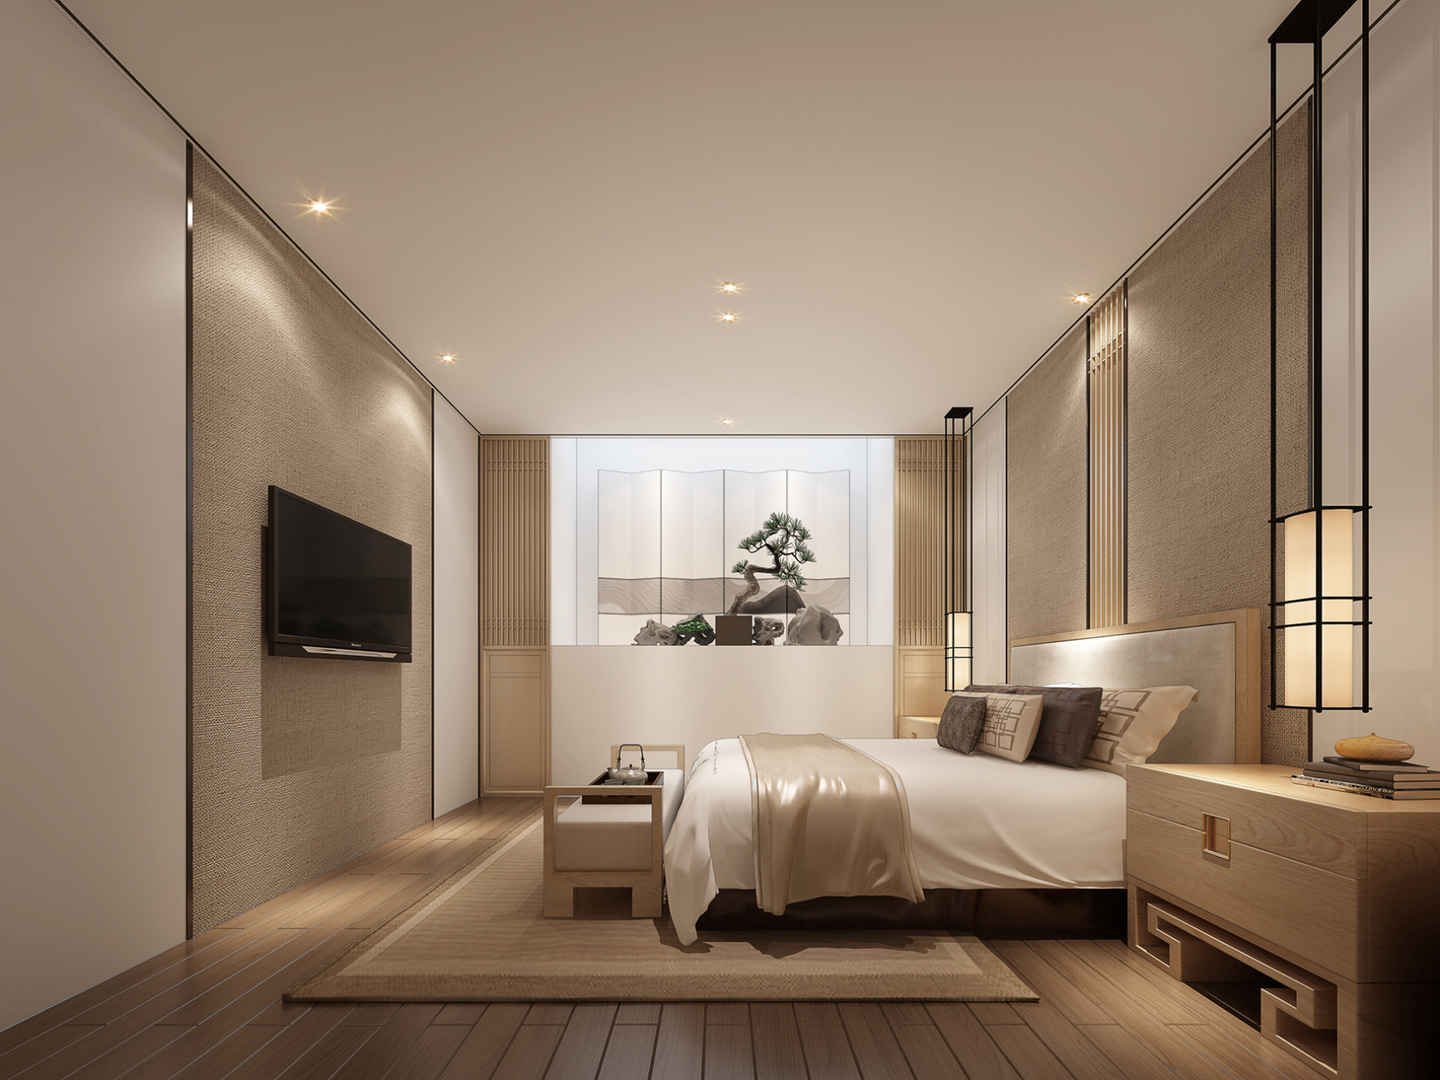 中式风格别墅装卧室修效果图大全欣赏